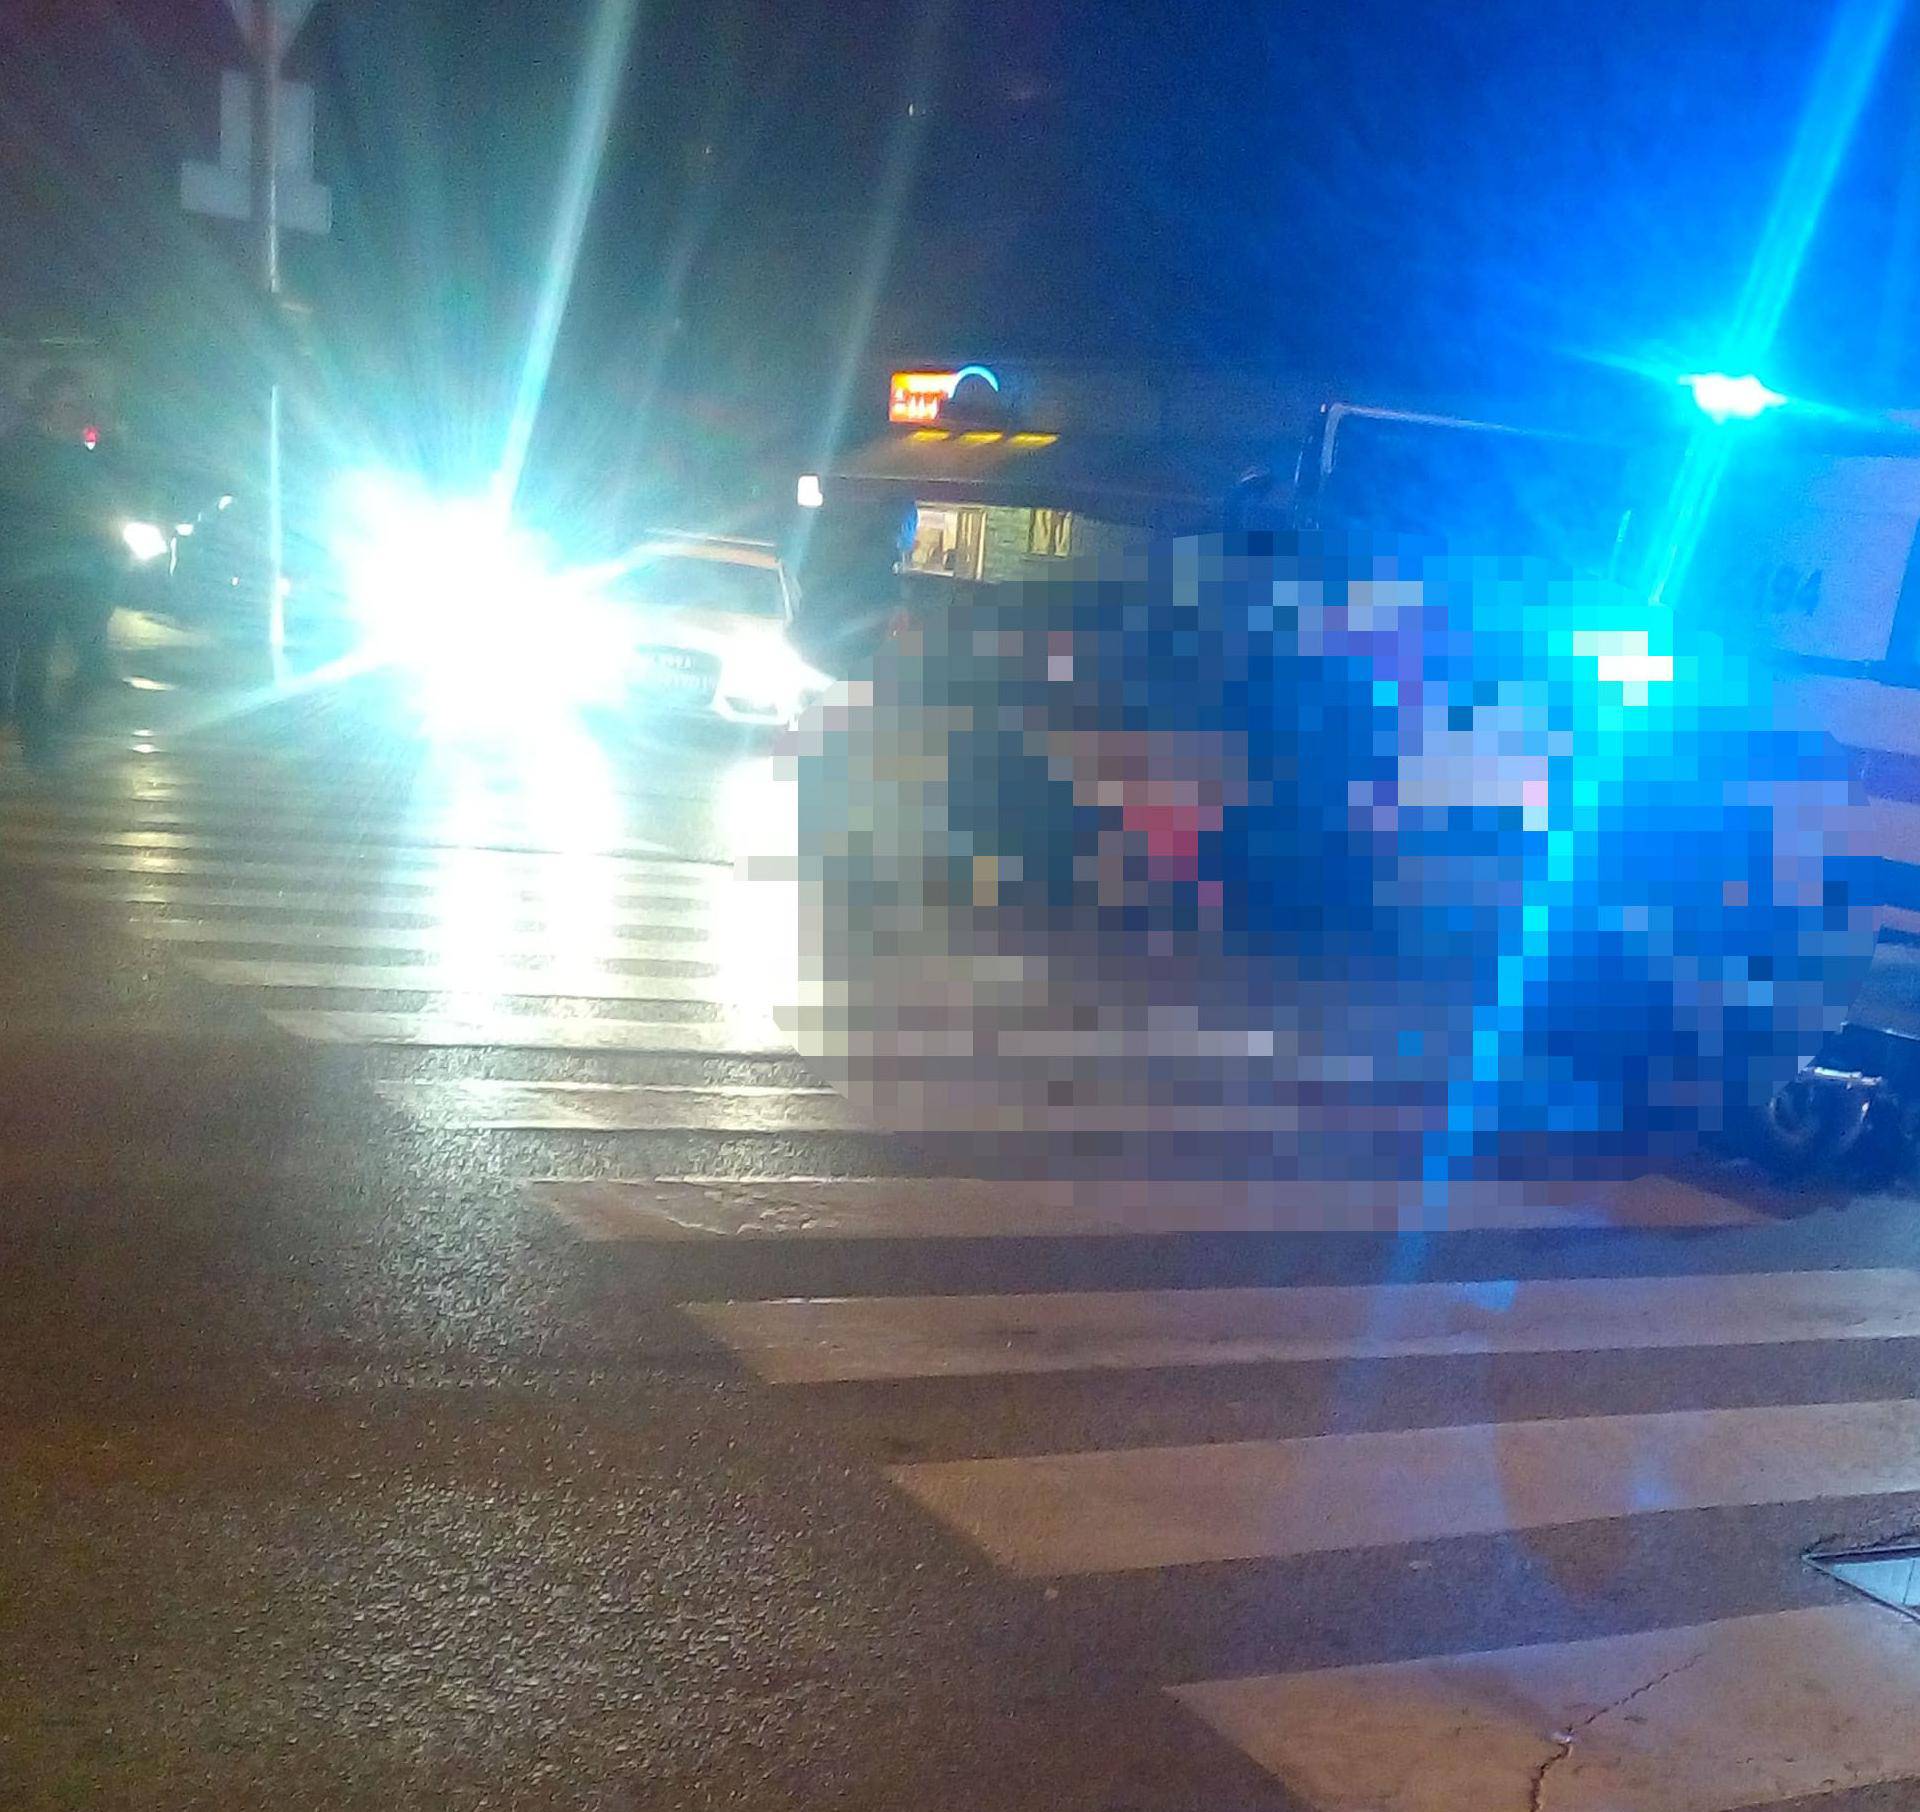 Sudarili se automobil i motor u Osijeku: Dvoje ljudi ozlijeđeno